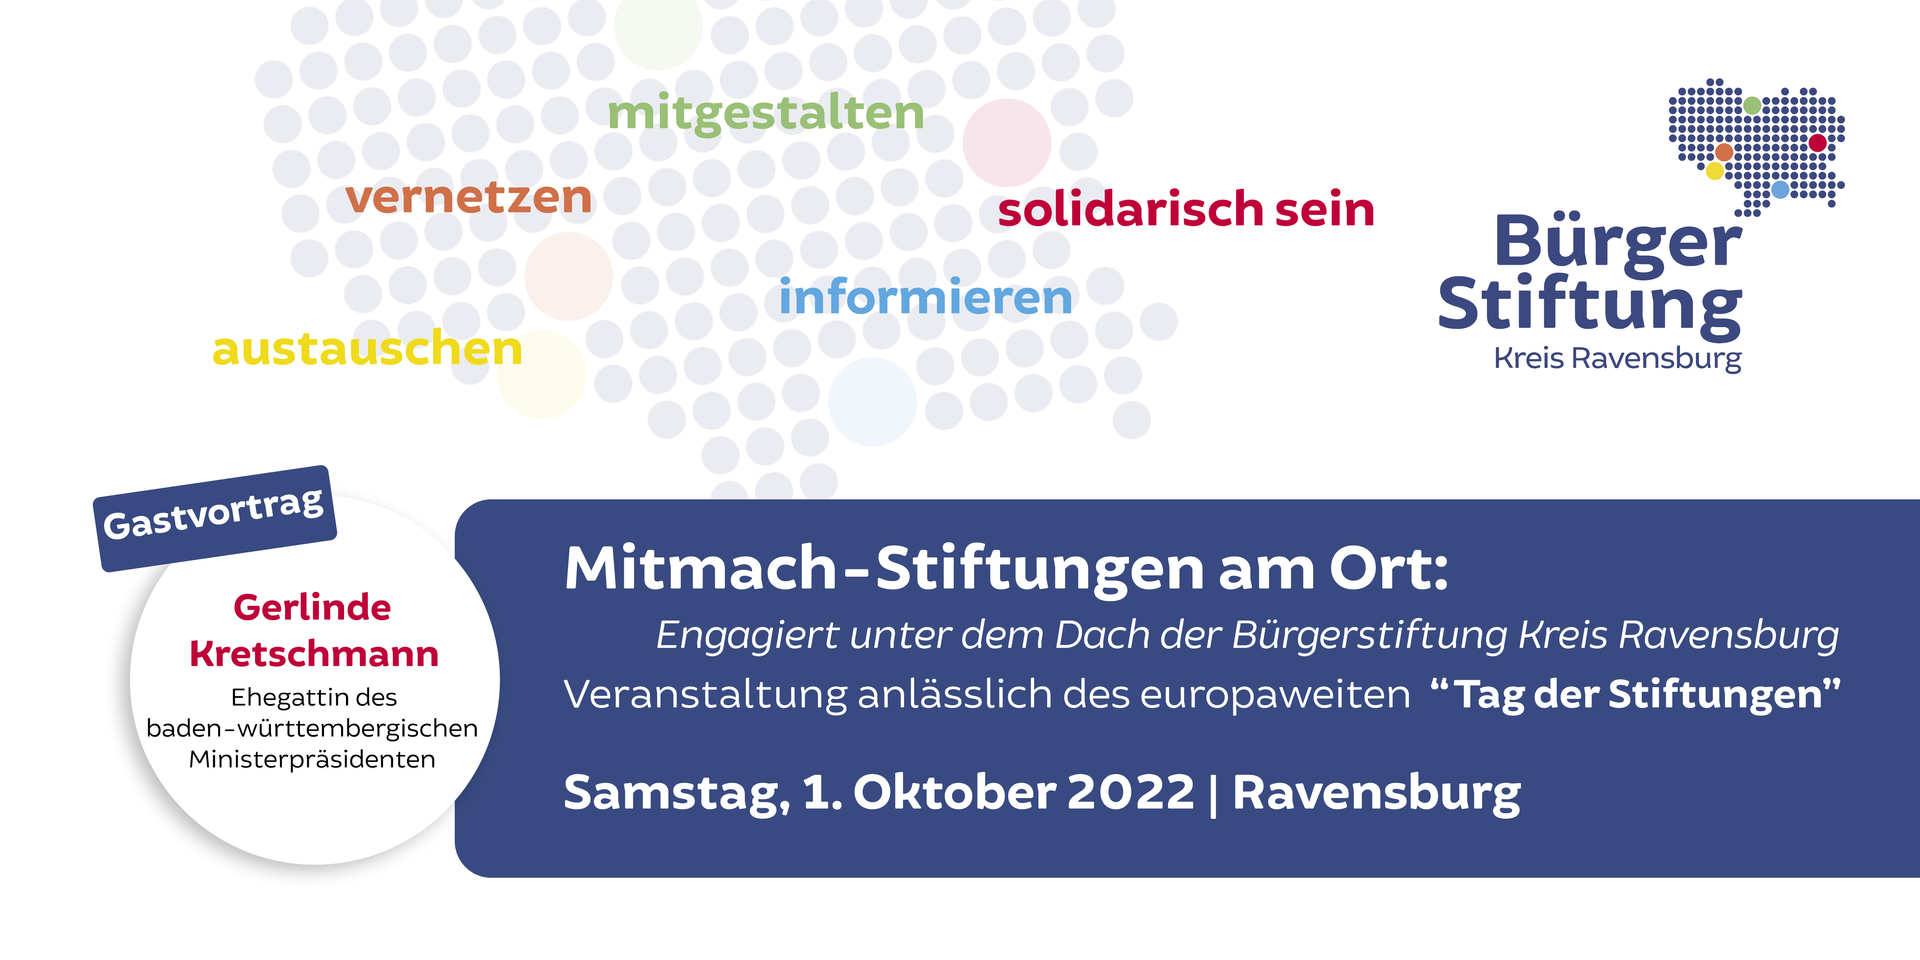 Mitmach-Stiftungen am Ort: Engagiert unter dem Dach der Bürgerstiftung Kreis Ravensburg